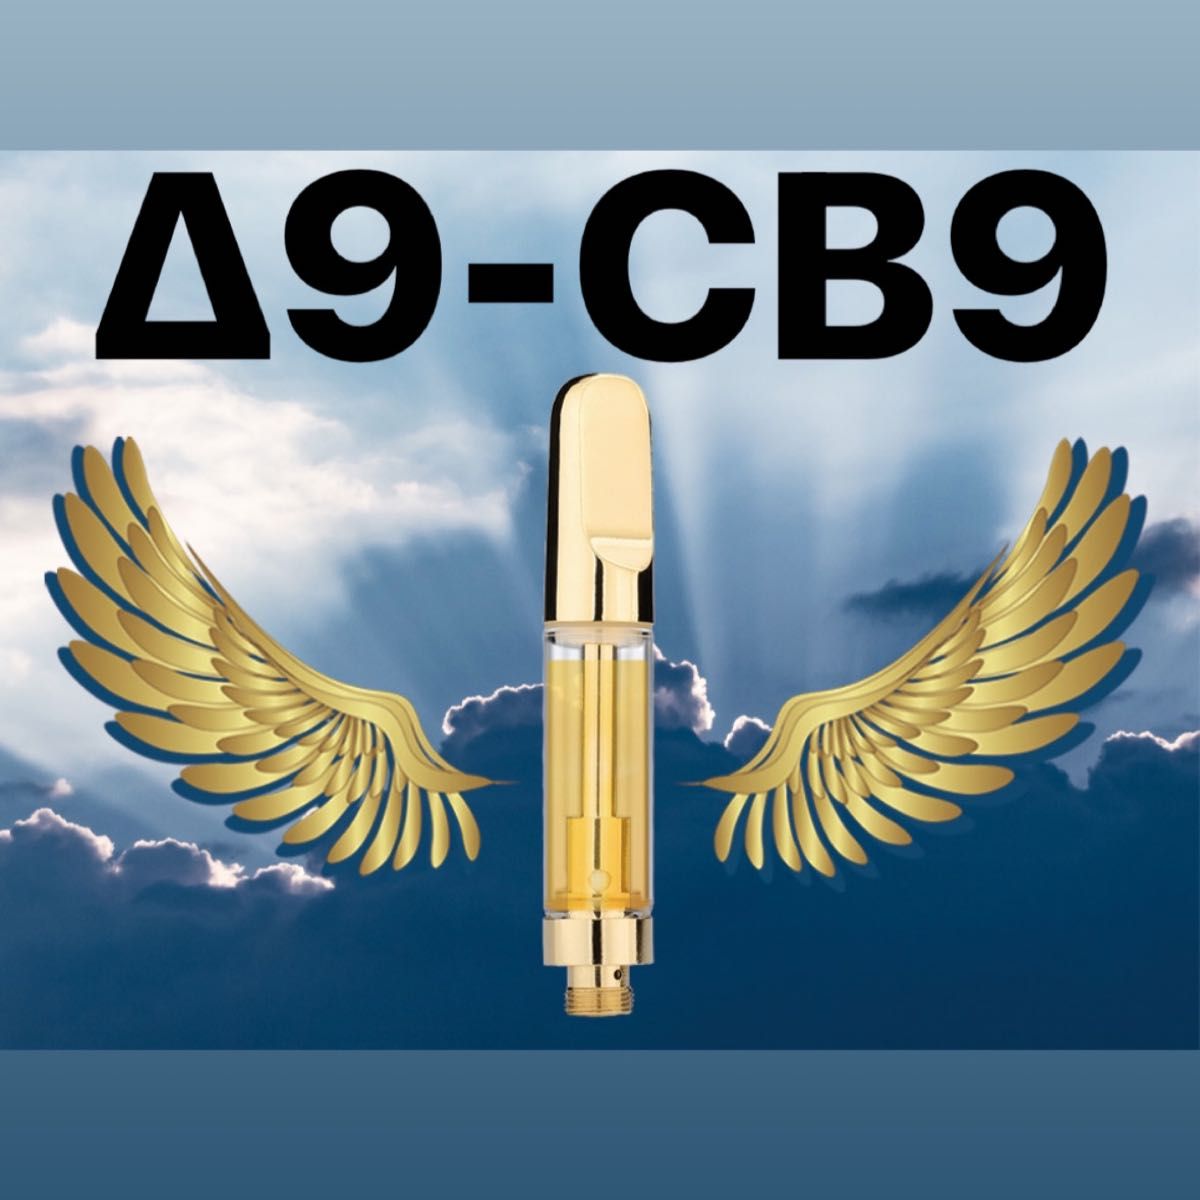 Δ9-CB9 リキッド 1ml 80% O.G.kush フレーバー　420ゲリラセール第17弾